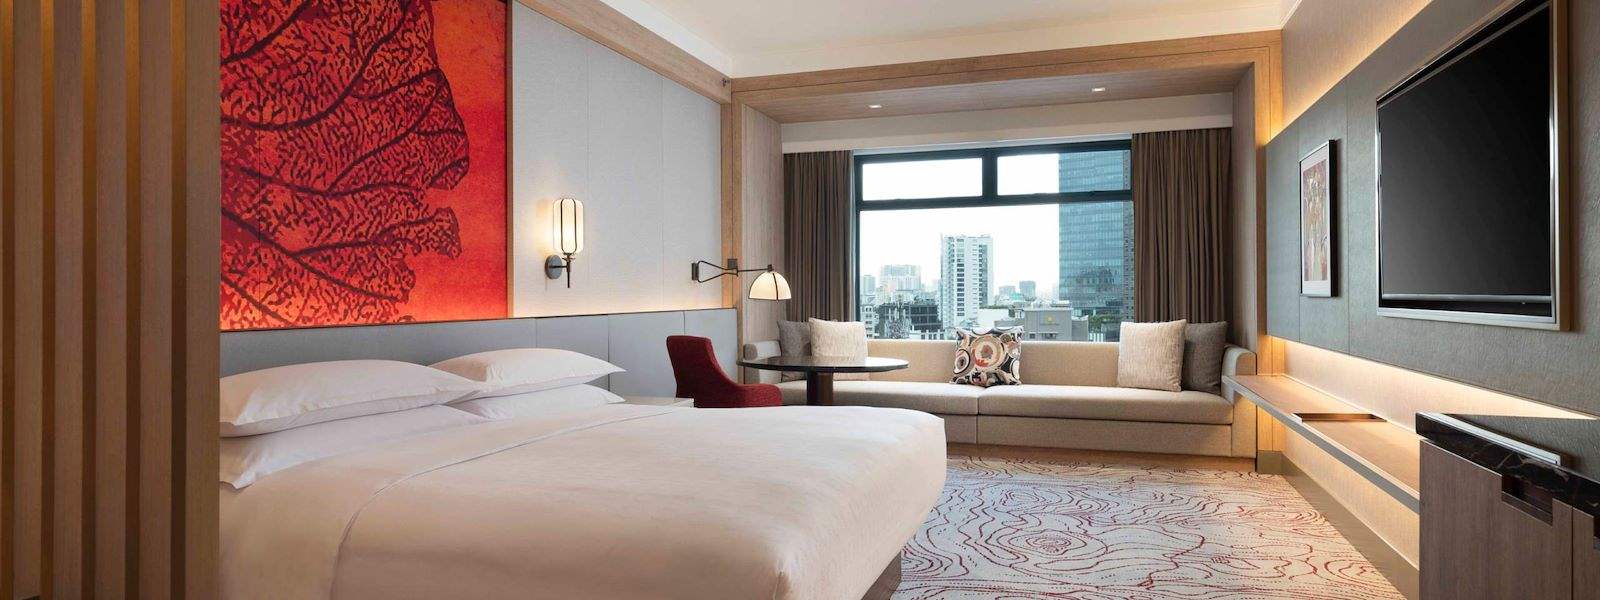 Sheraton Saigon Hotel & Towers đã được cải tiến để đáp ứng những yêu cầu cao nhất của du khách. Tận hưởng tiện nghi của một khách sạn sang trọng và những dịch vụ chuyên nghiệp của đội ngũ nhân viên. Tùy chọn lý tưởng cho những du khách đang tìm kiếm một kỳ nghỉ đáng nhớ tại TP.HCM.